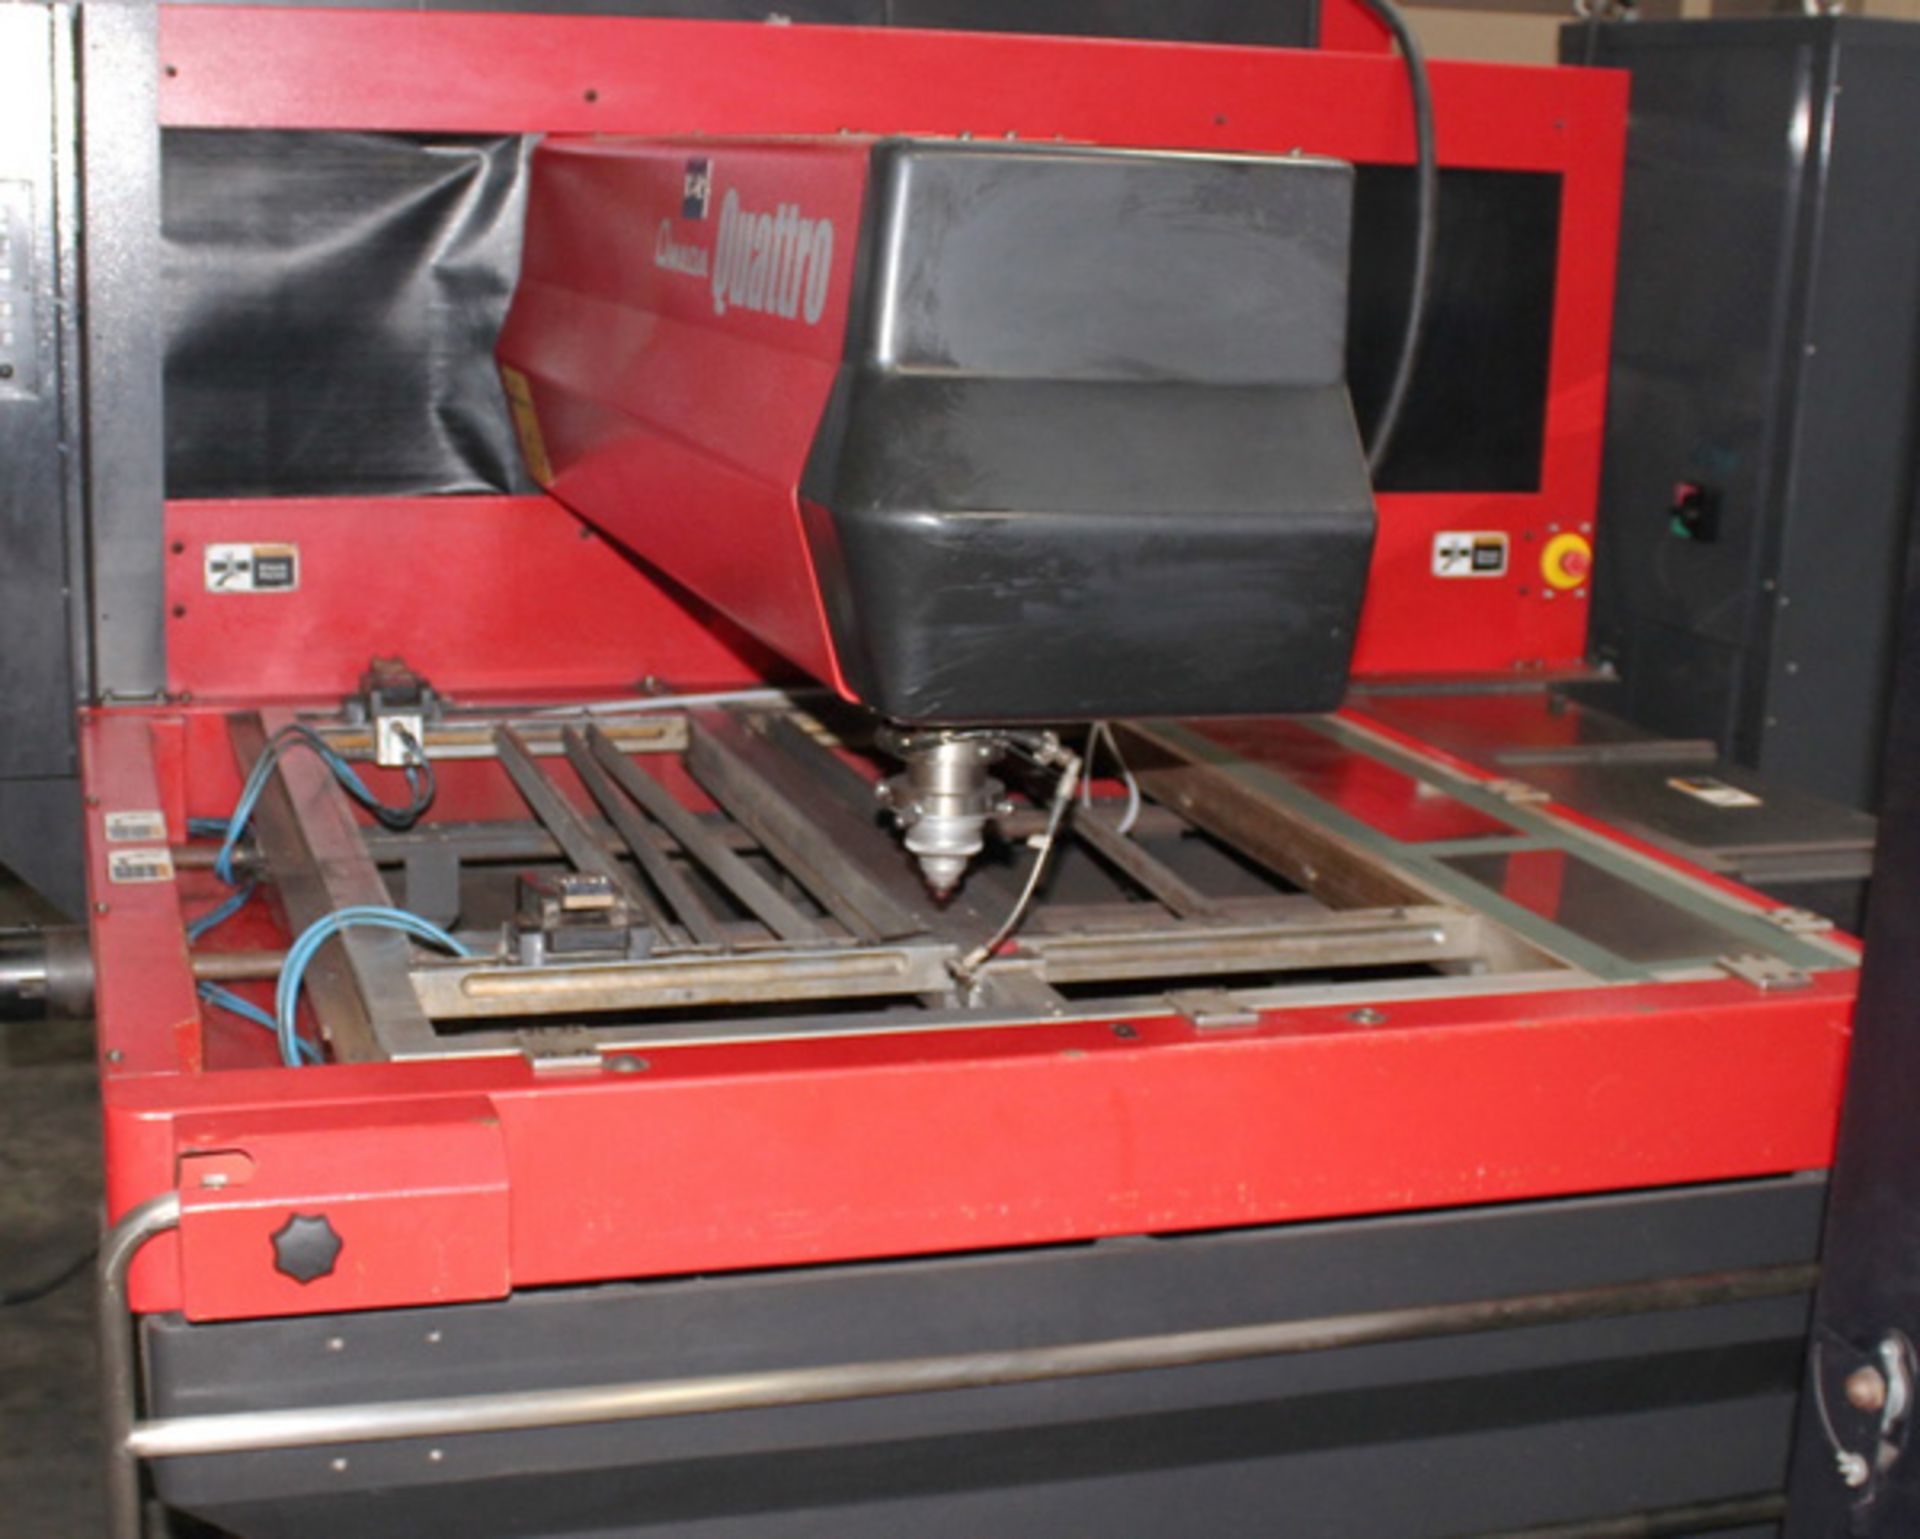 2011 Amada Quattro CNC Laser Cutting Machine 2,000 Watt x 49" x 49" x 3.9", Mdl: Quattro , S/N: - Image 8 of 33